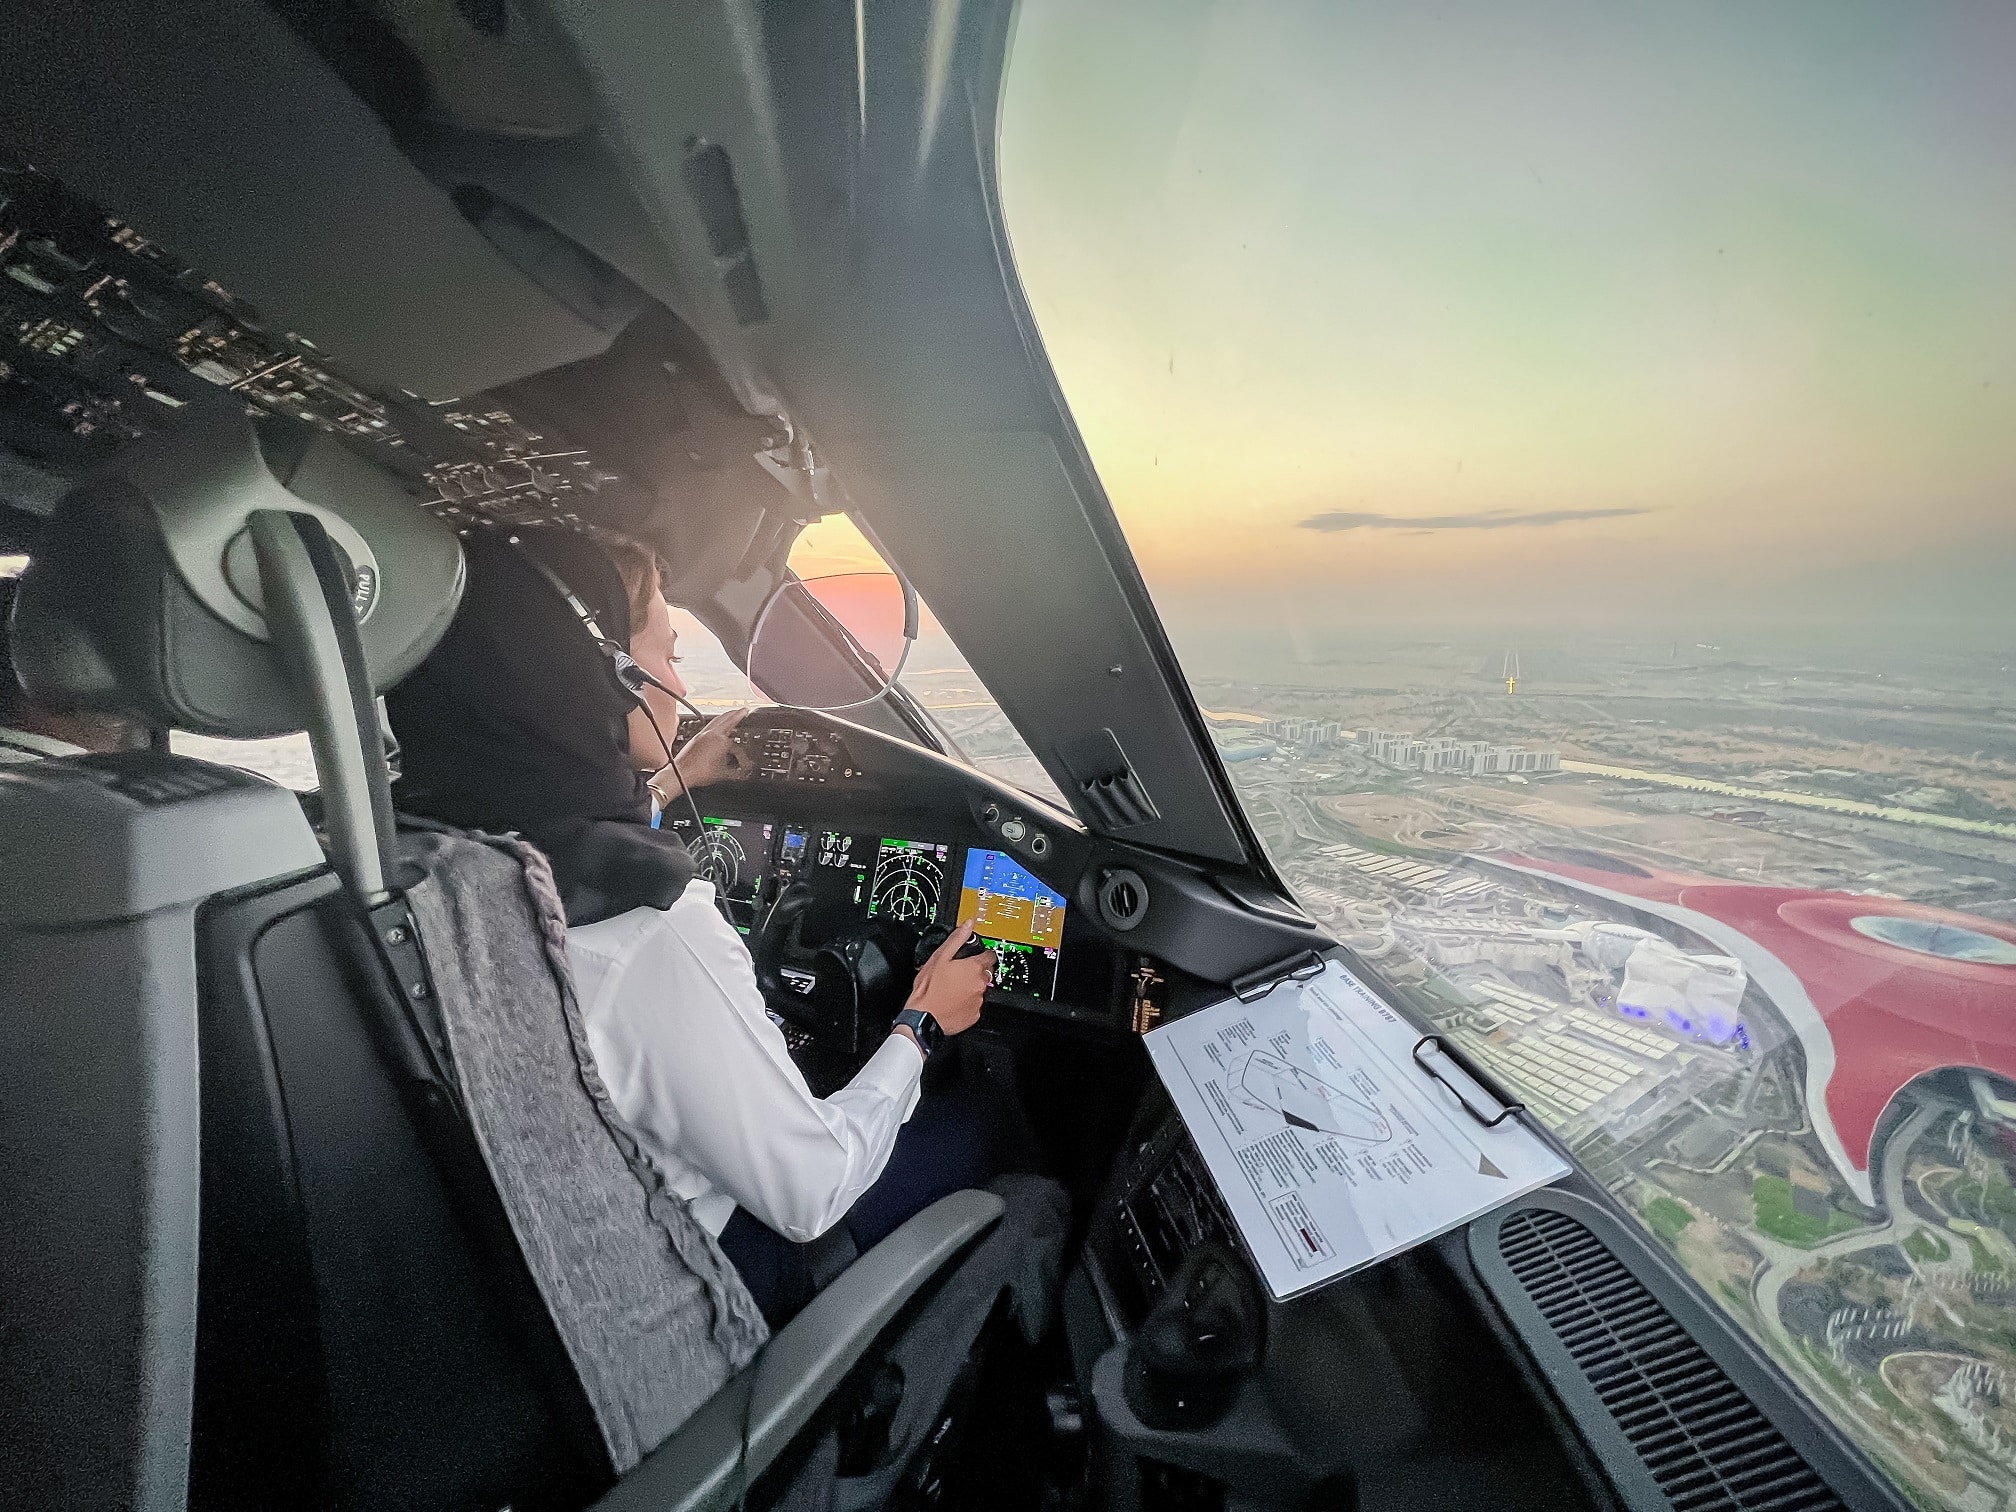 Betydelig præstation for Etihad Airways i sit første træningsprogram i Mellemøsten for at tildele en pilotlicens for flere besætninger på Boeing 787 Dreamliners